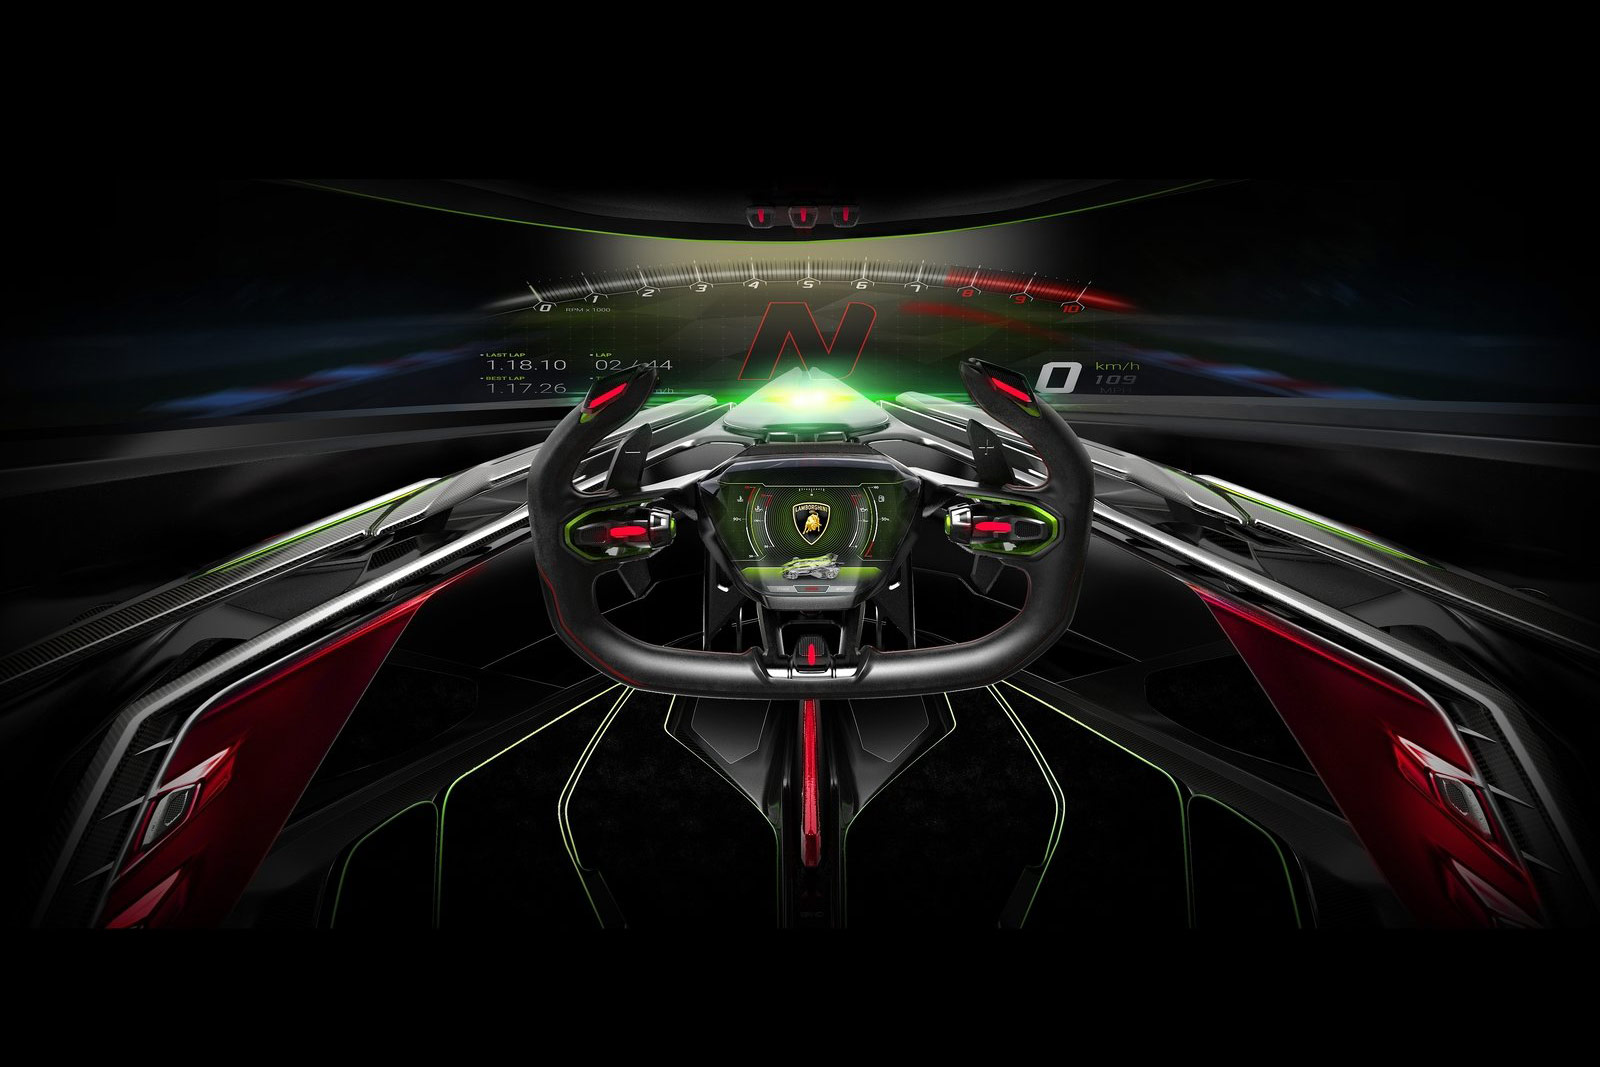 Galerie: Lamborghini Lambo V12 Vision Gran Turismo Concept